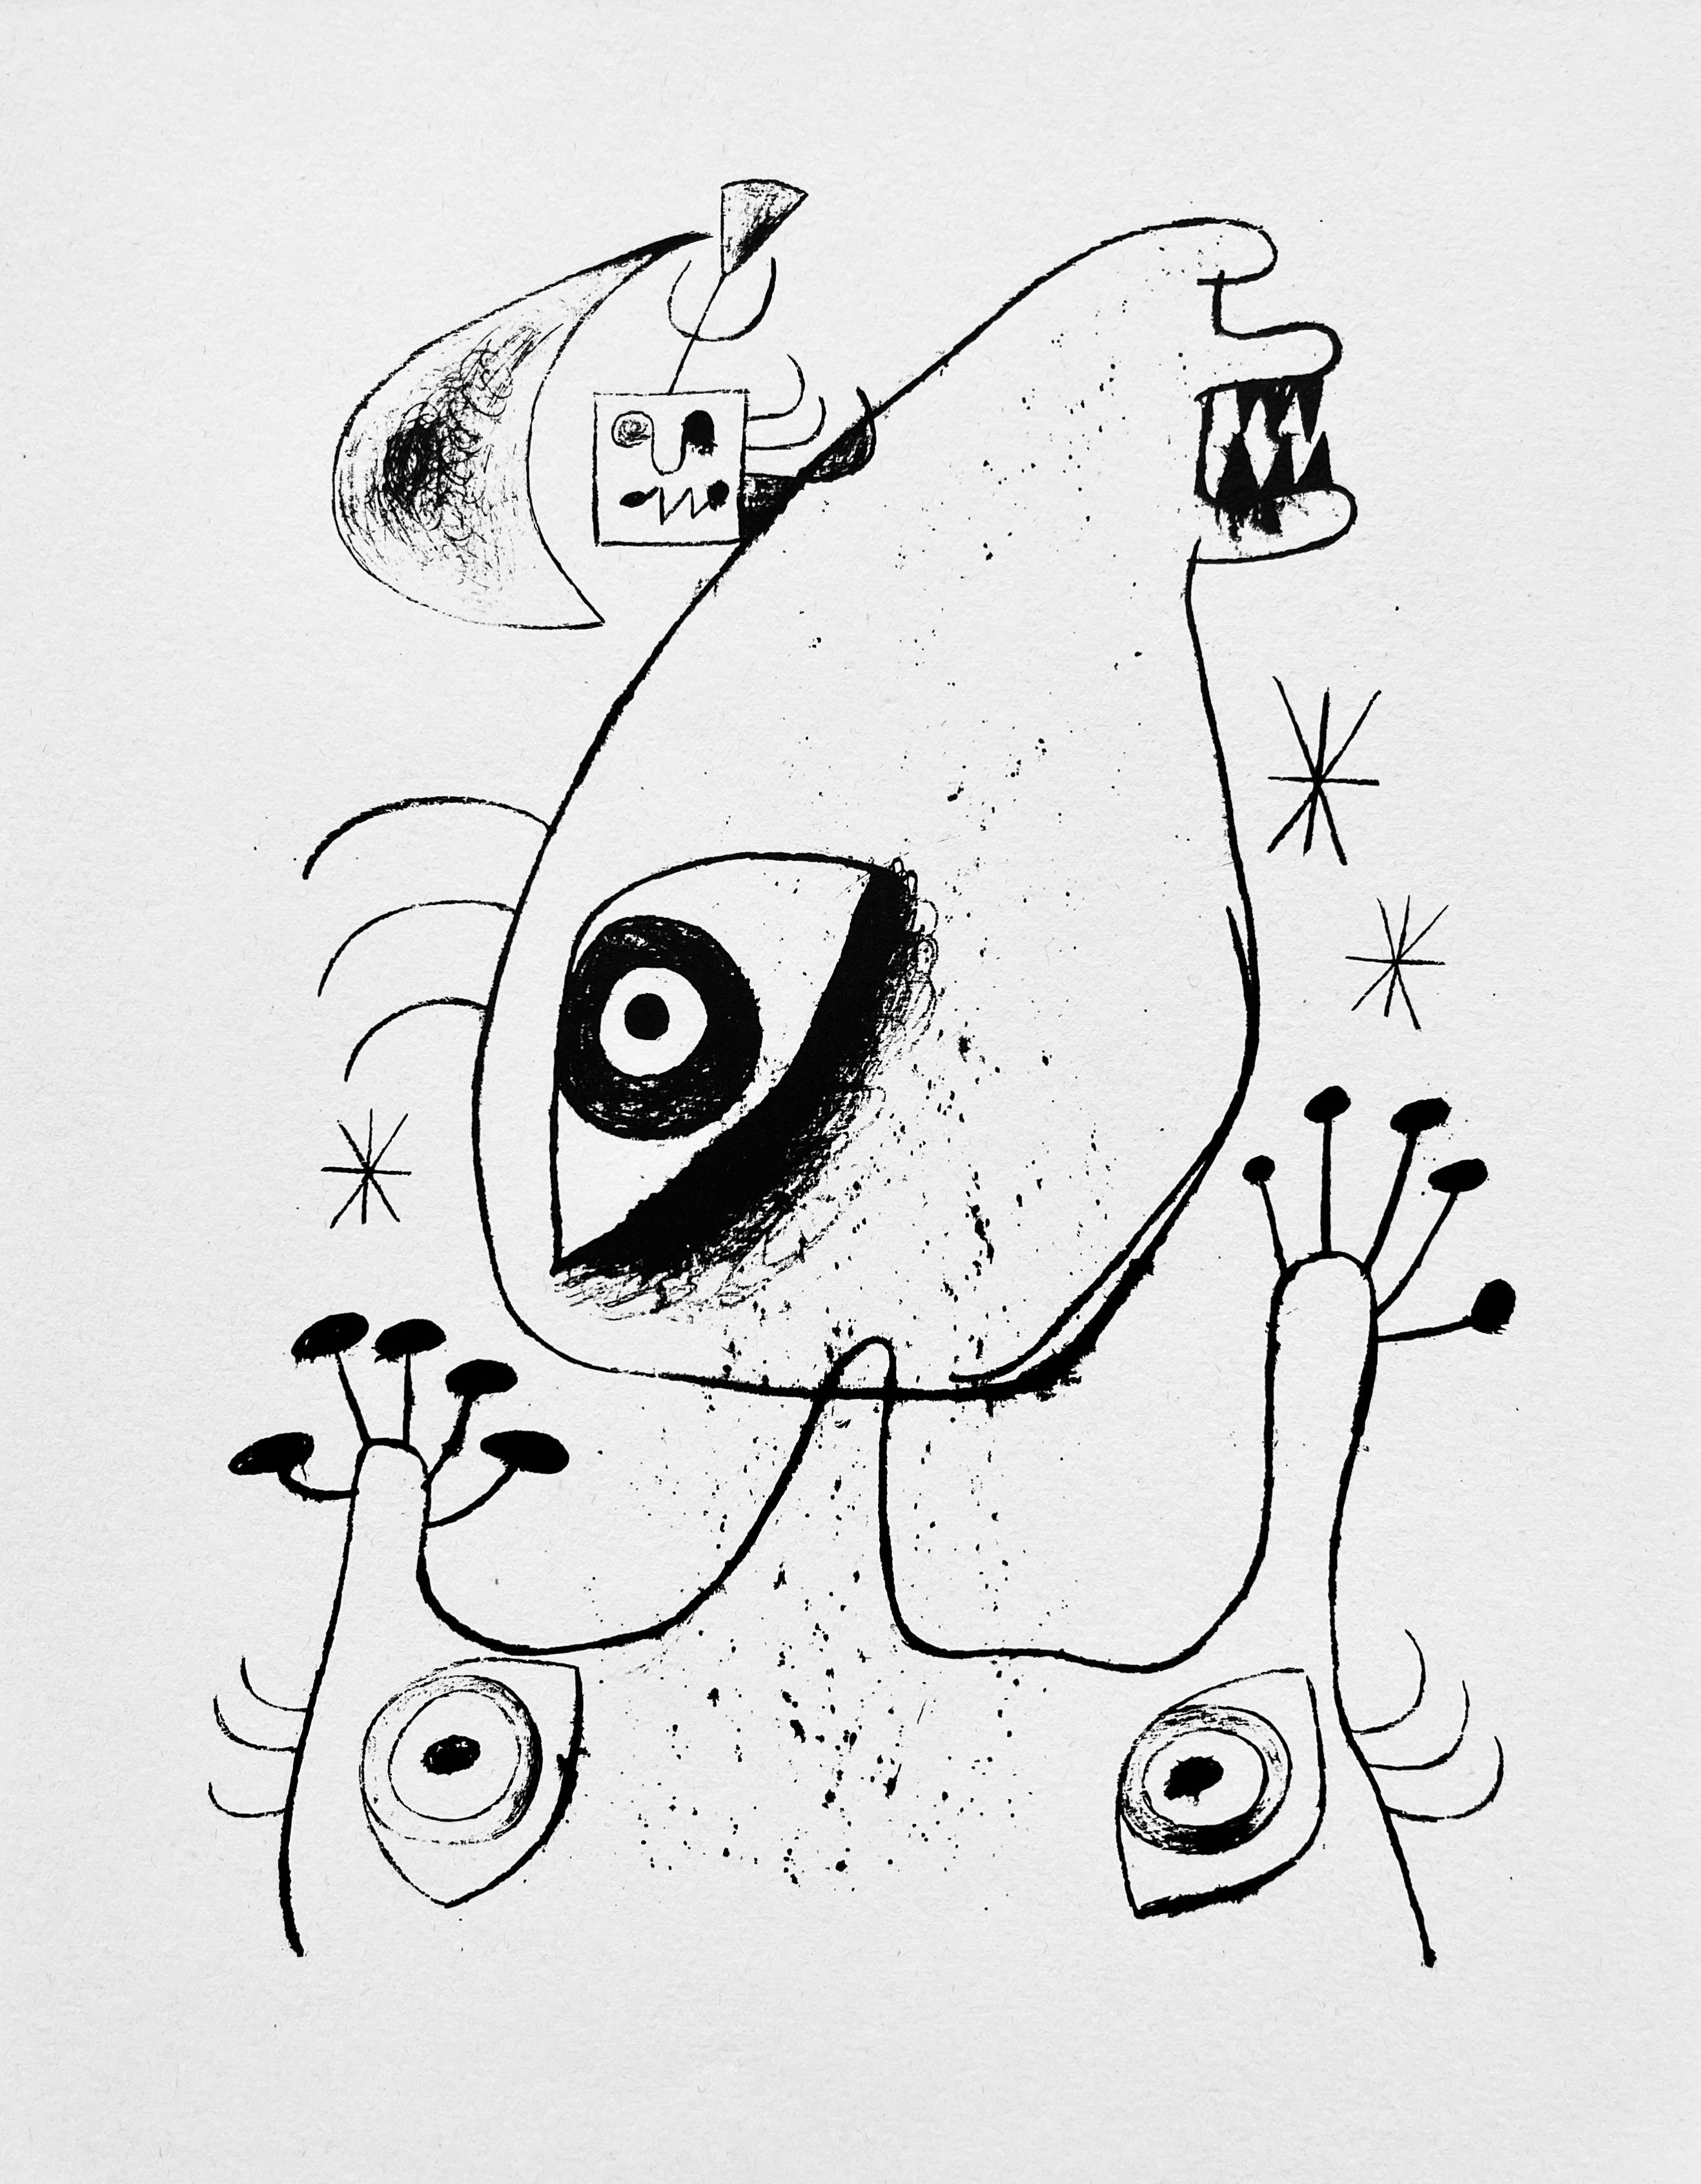 Miro, Composition, The Prints of Joan Miro (d'après) en vente 3